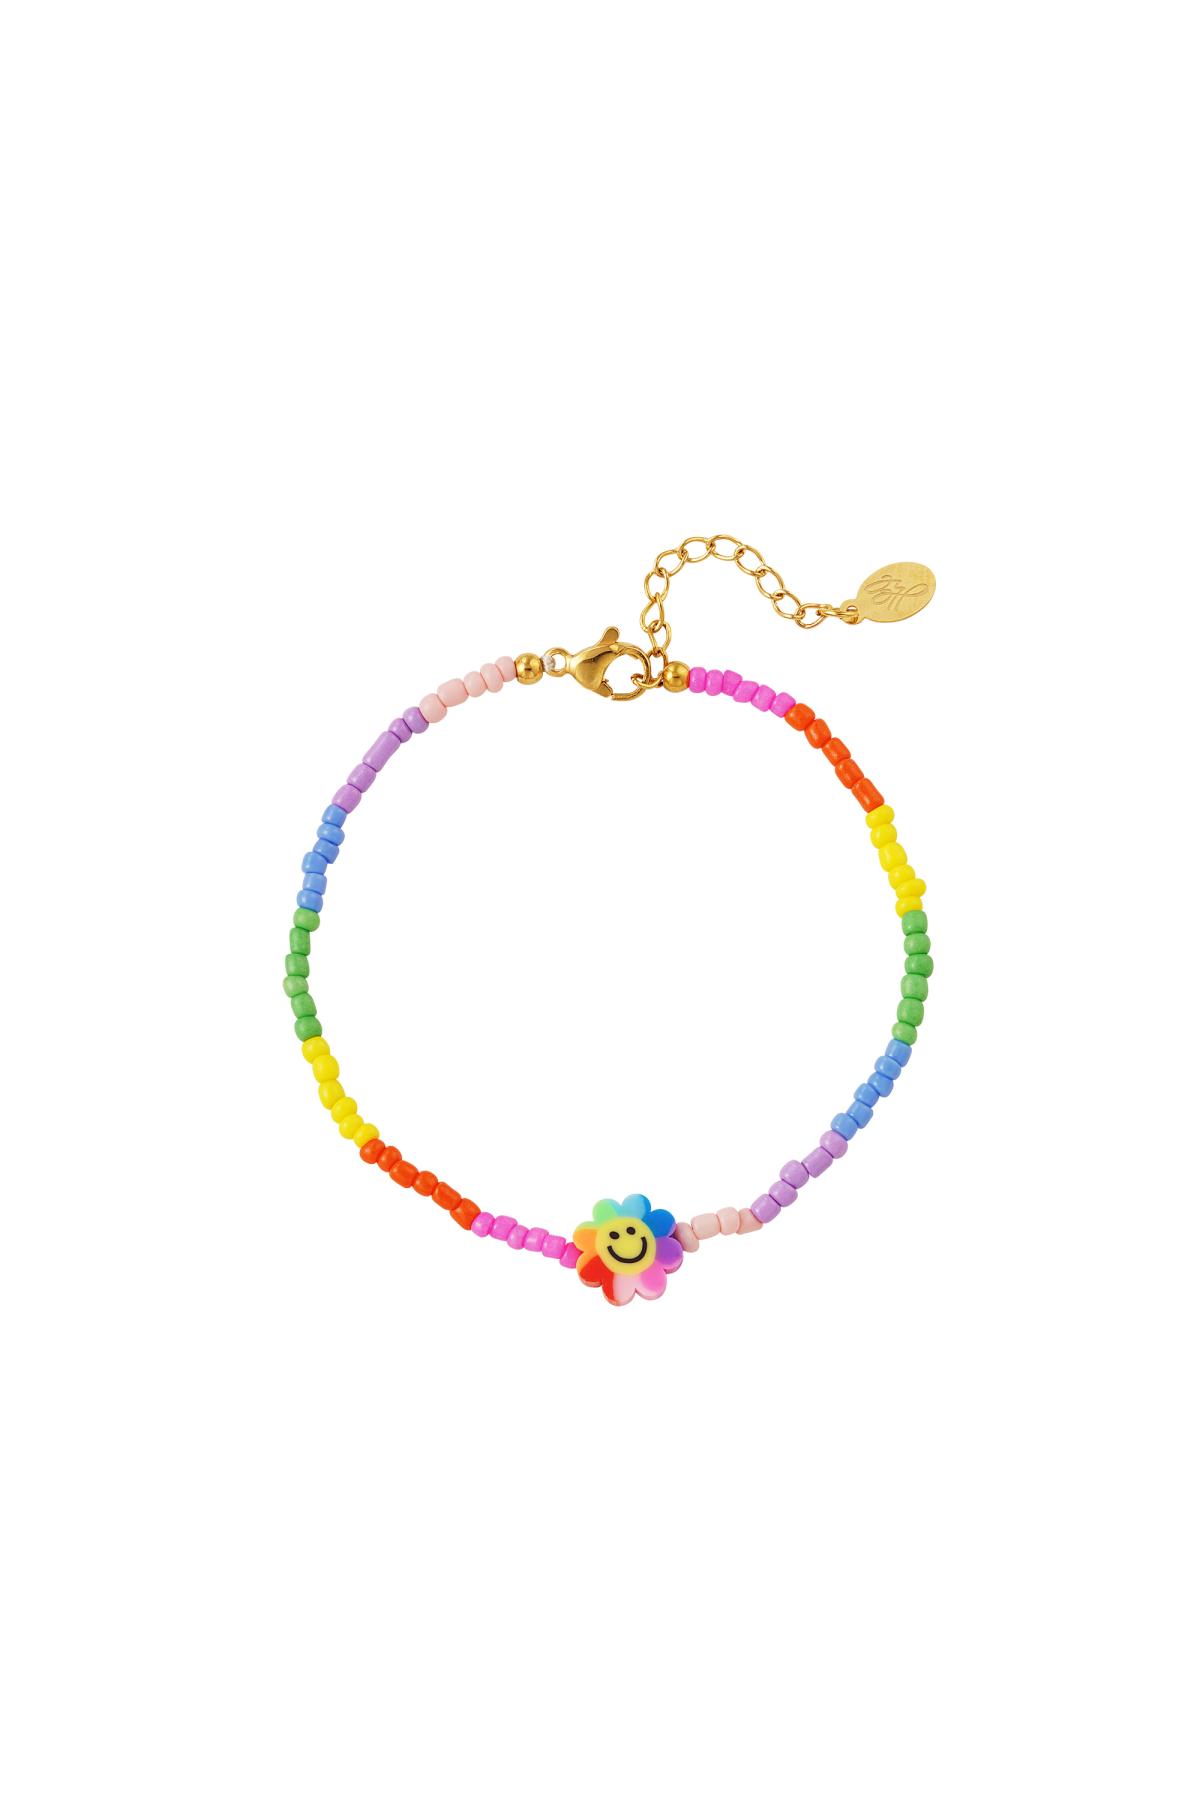 Pulsera flor smiley - colección Rainbow Multicolor Acero inoxidable